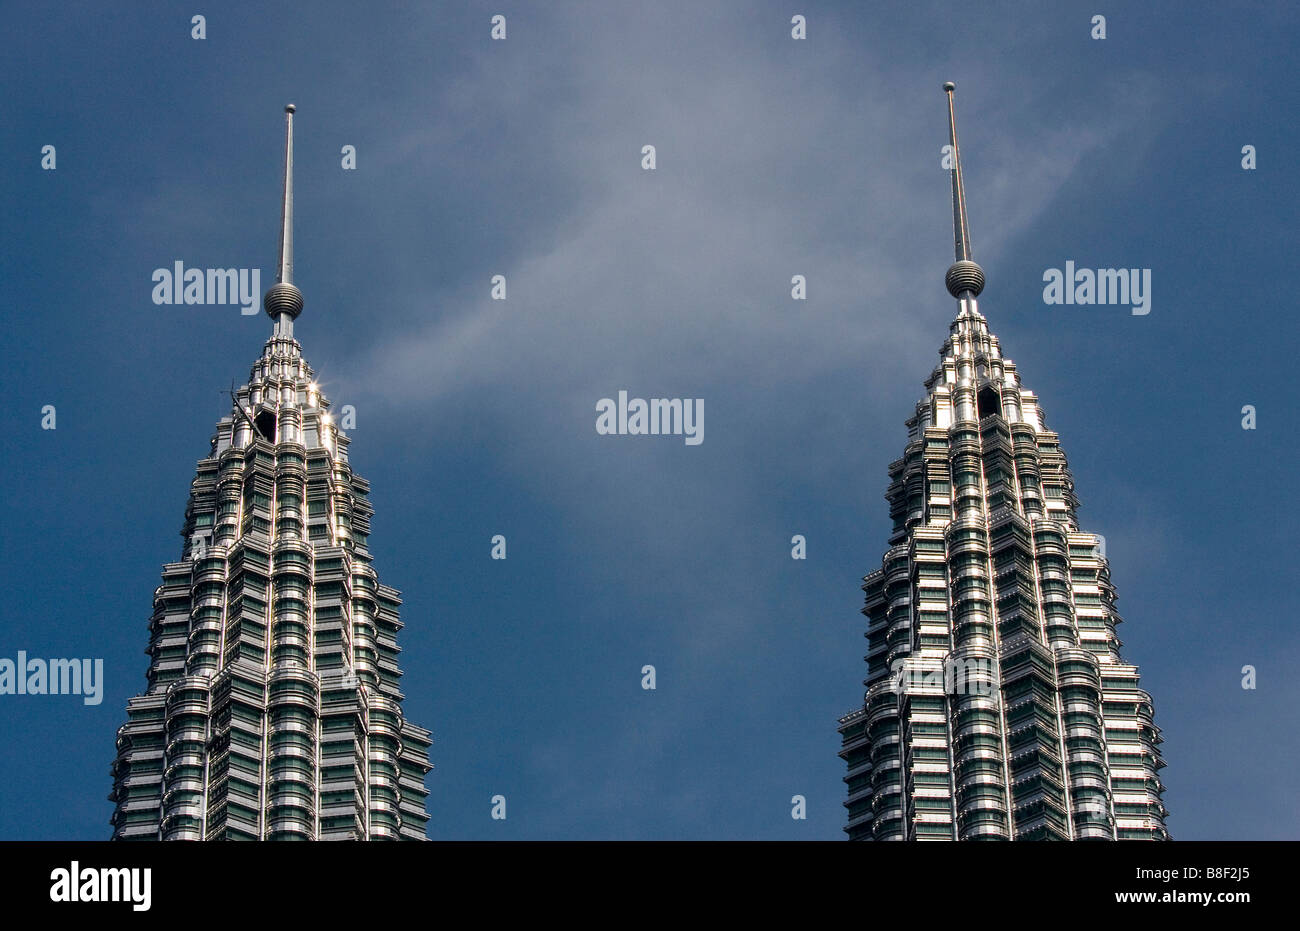 Petronas towers, Kuala Lumpur Stock Photo